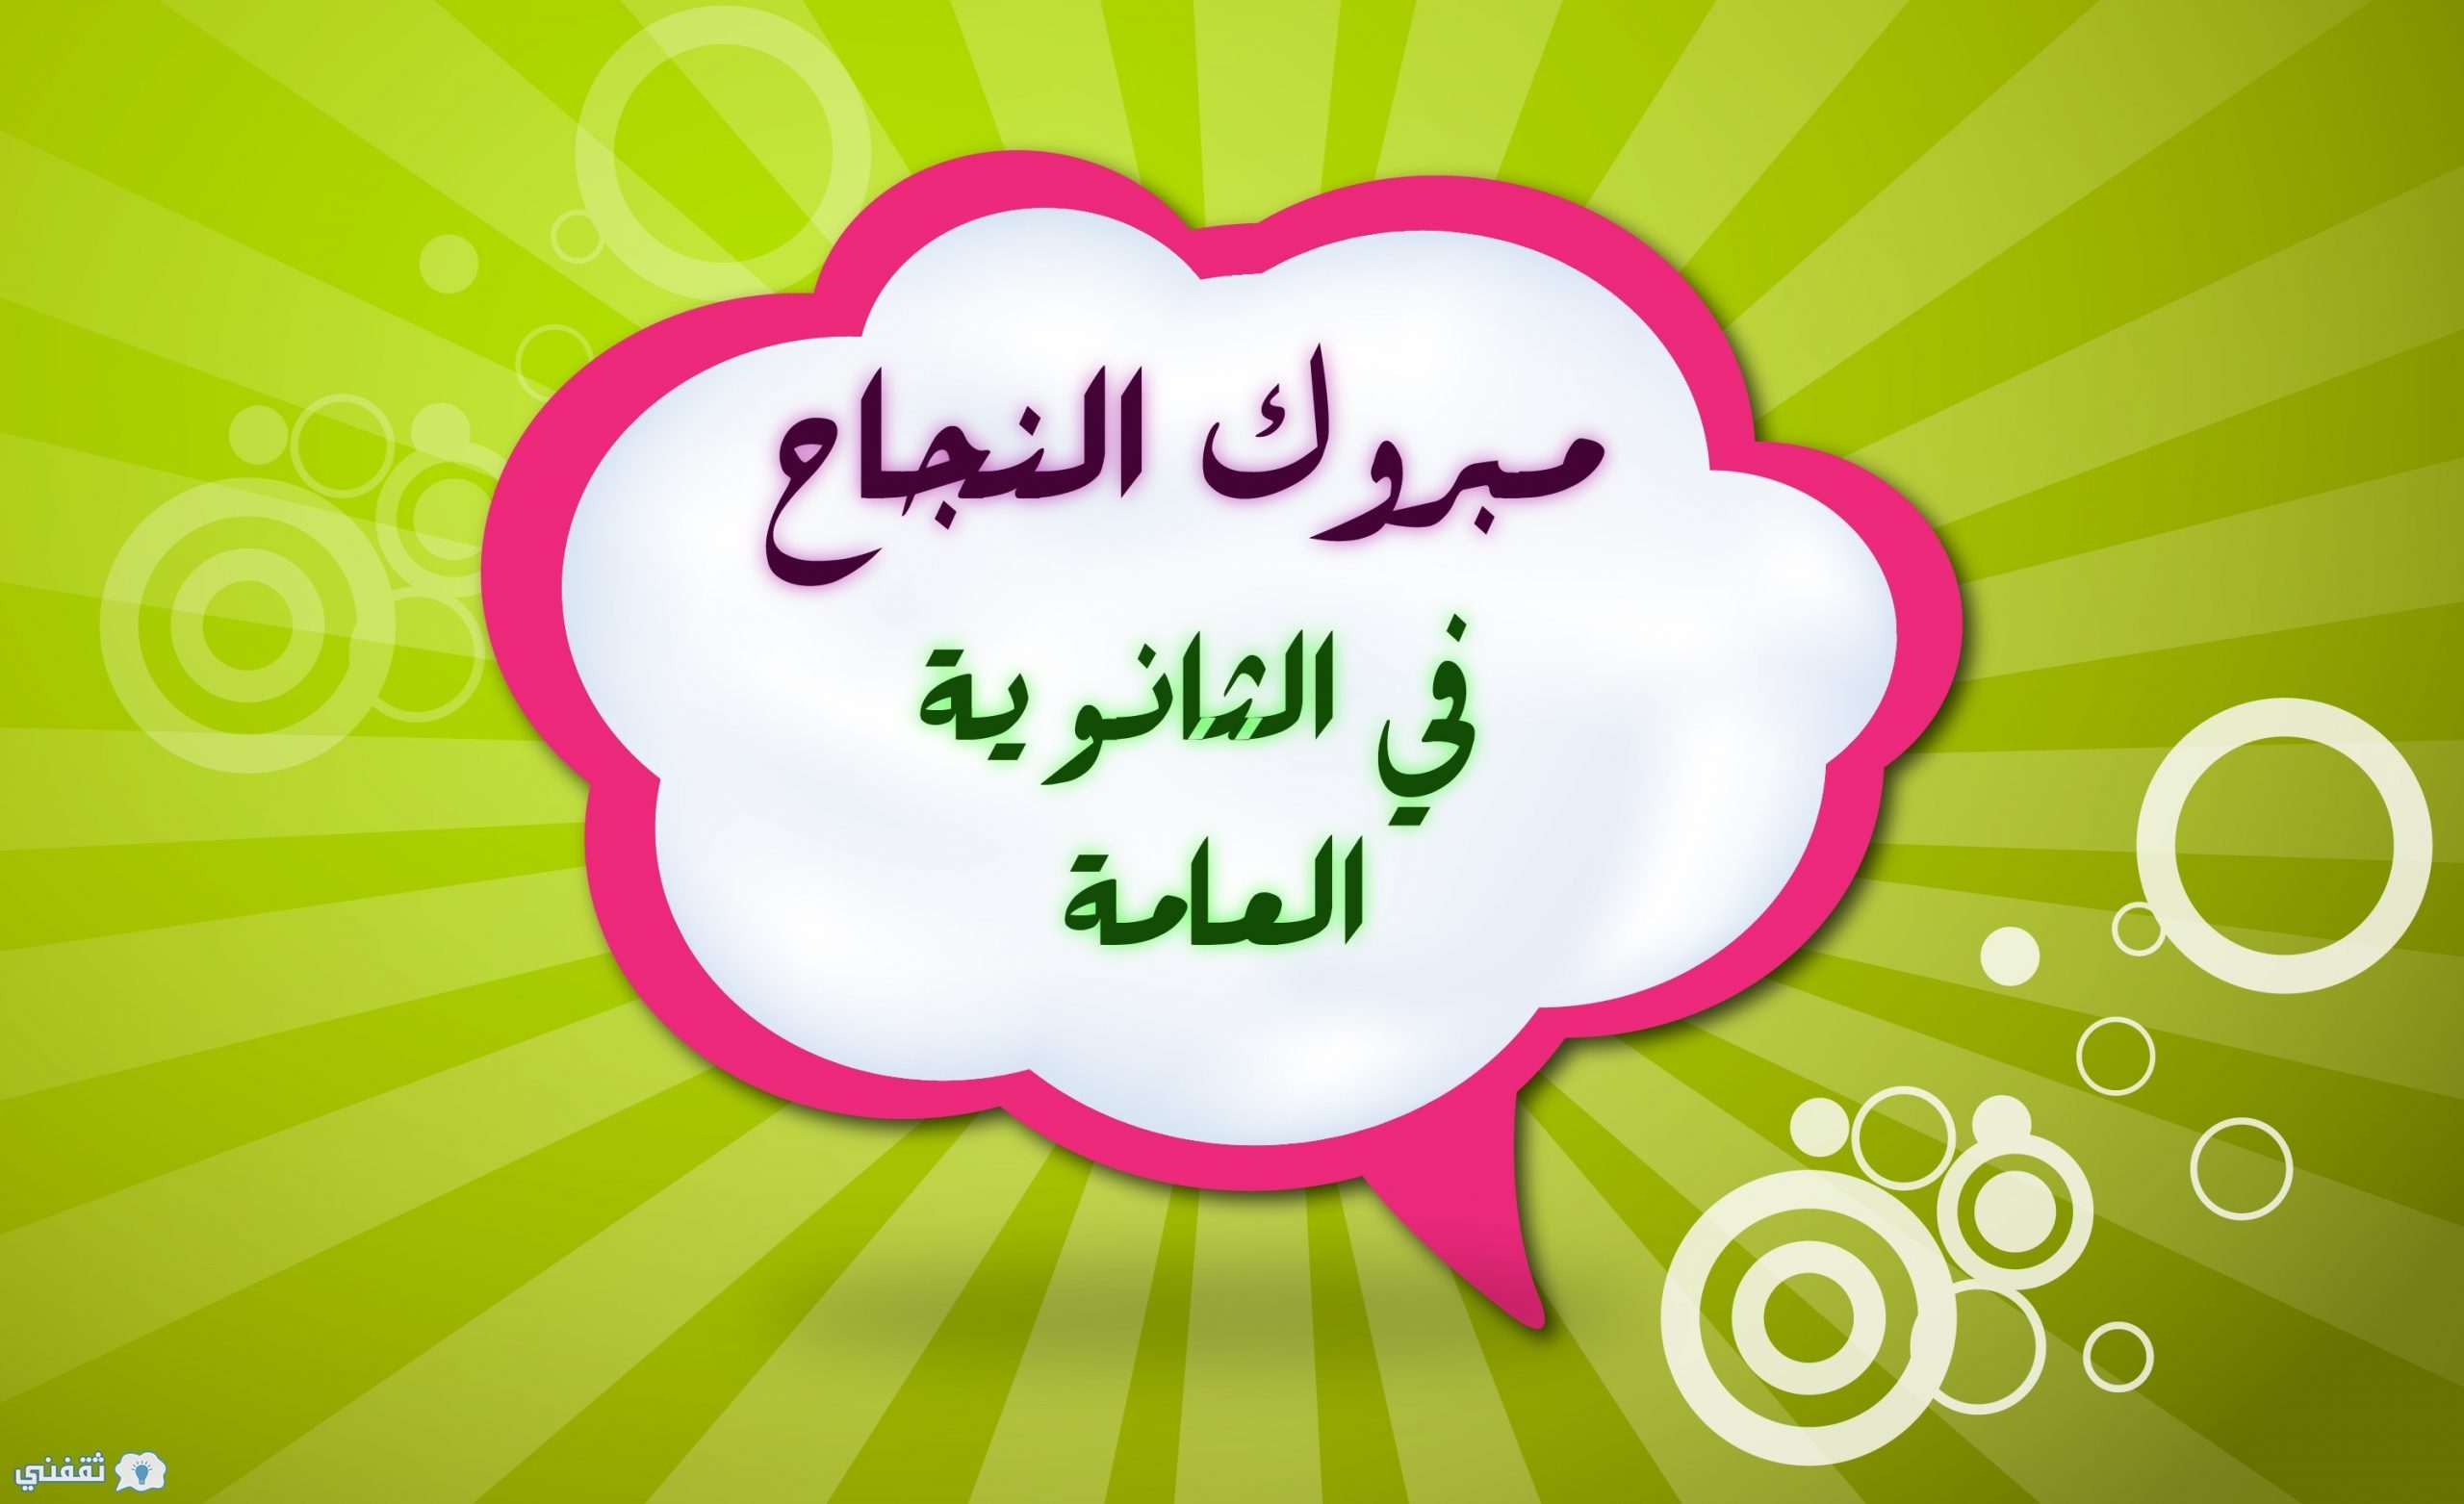 نتائج الثانوية العامة الأردنية scaled - مدونة التقنية العربية